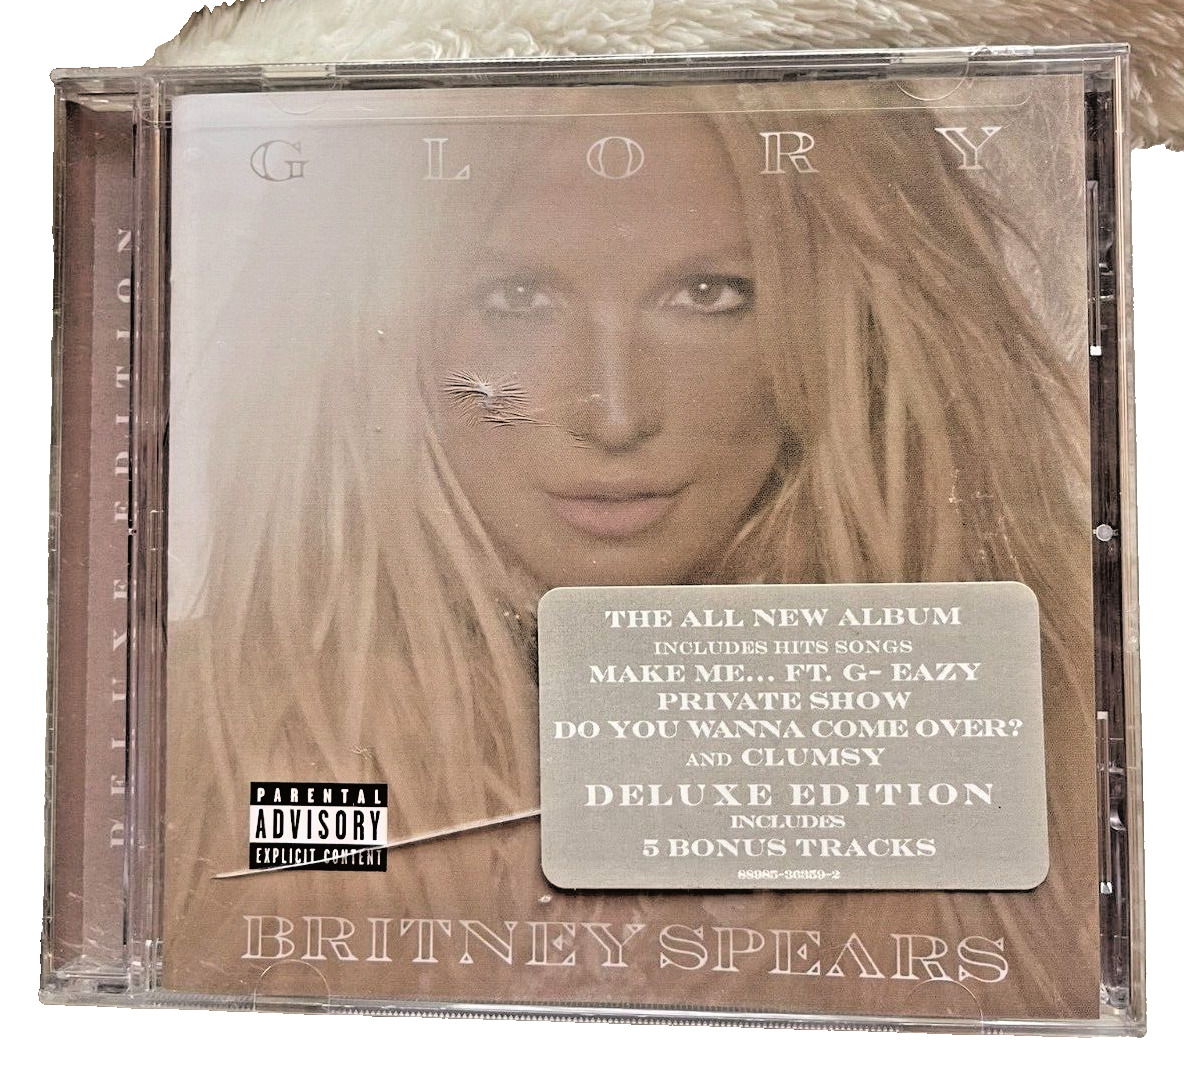 Britney Spears - Glory (Deluxe Version) (CD) New Sealed Rare 5 Bonus Tracks